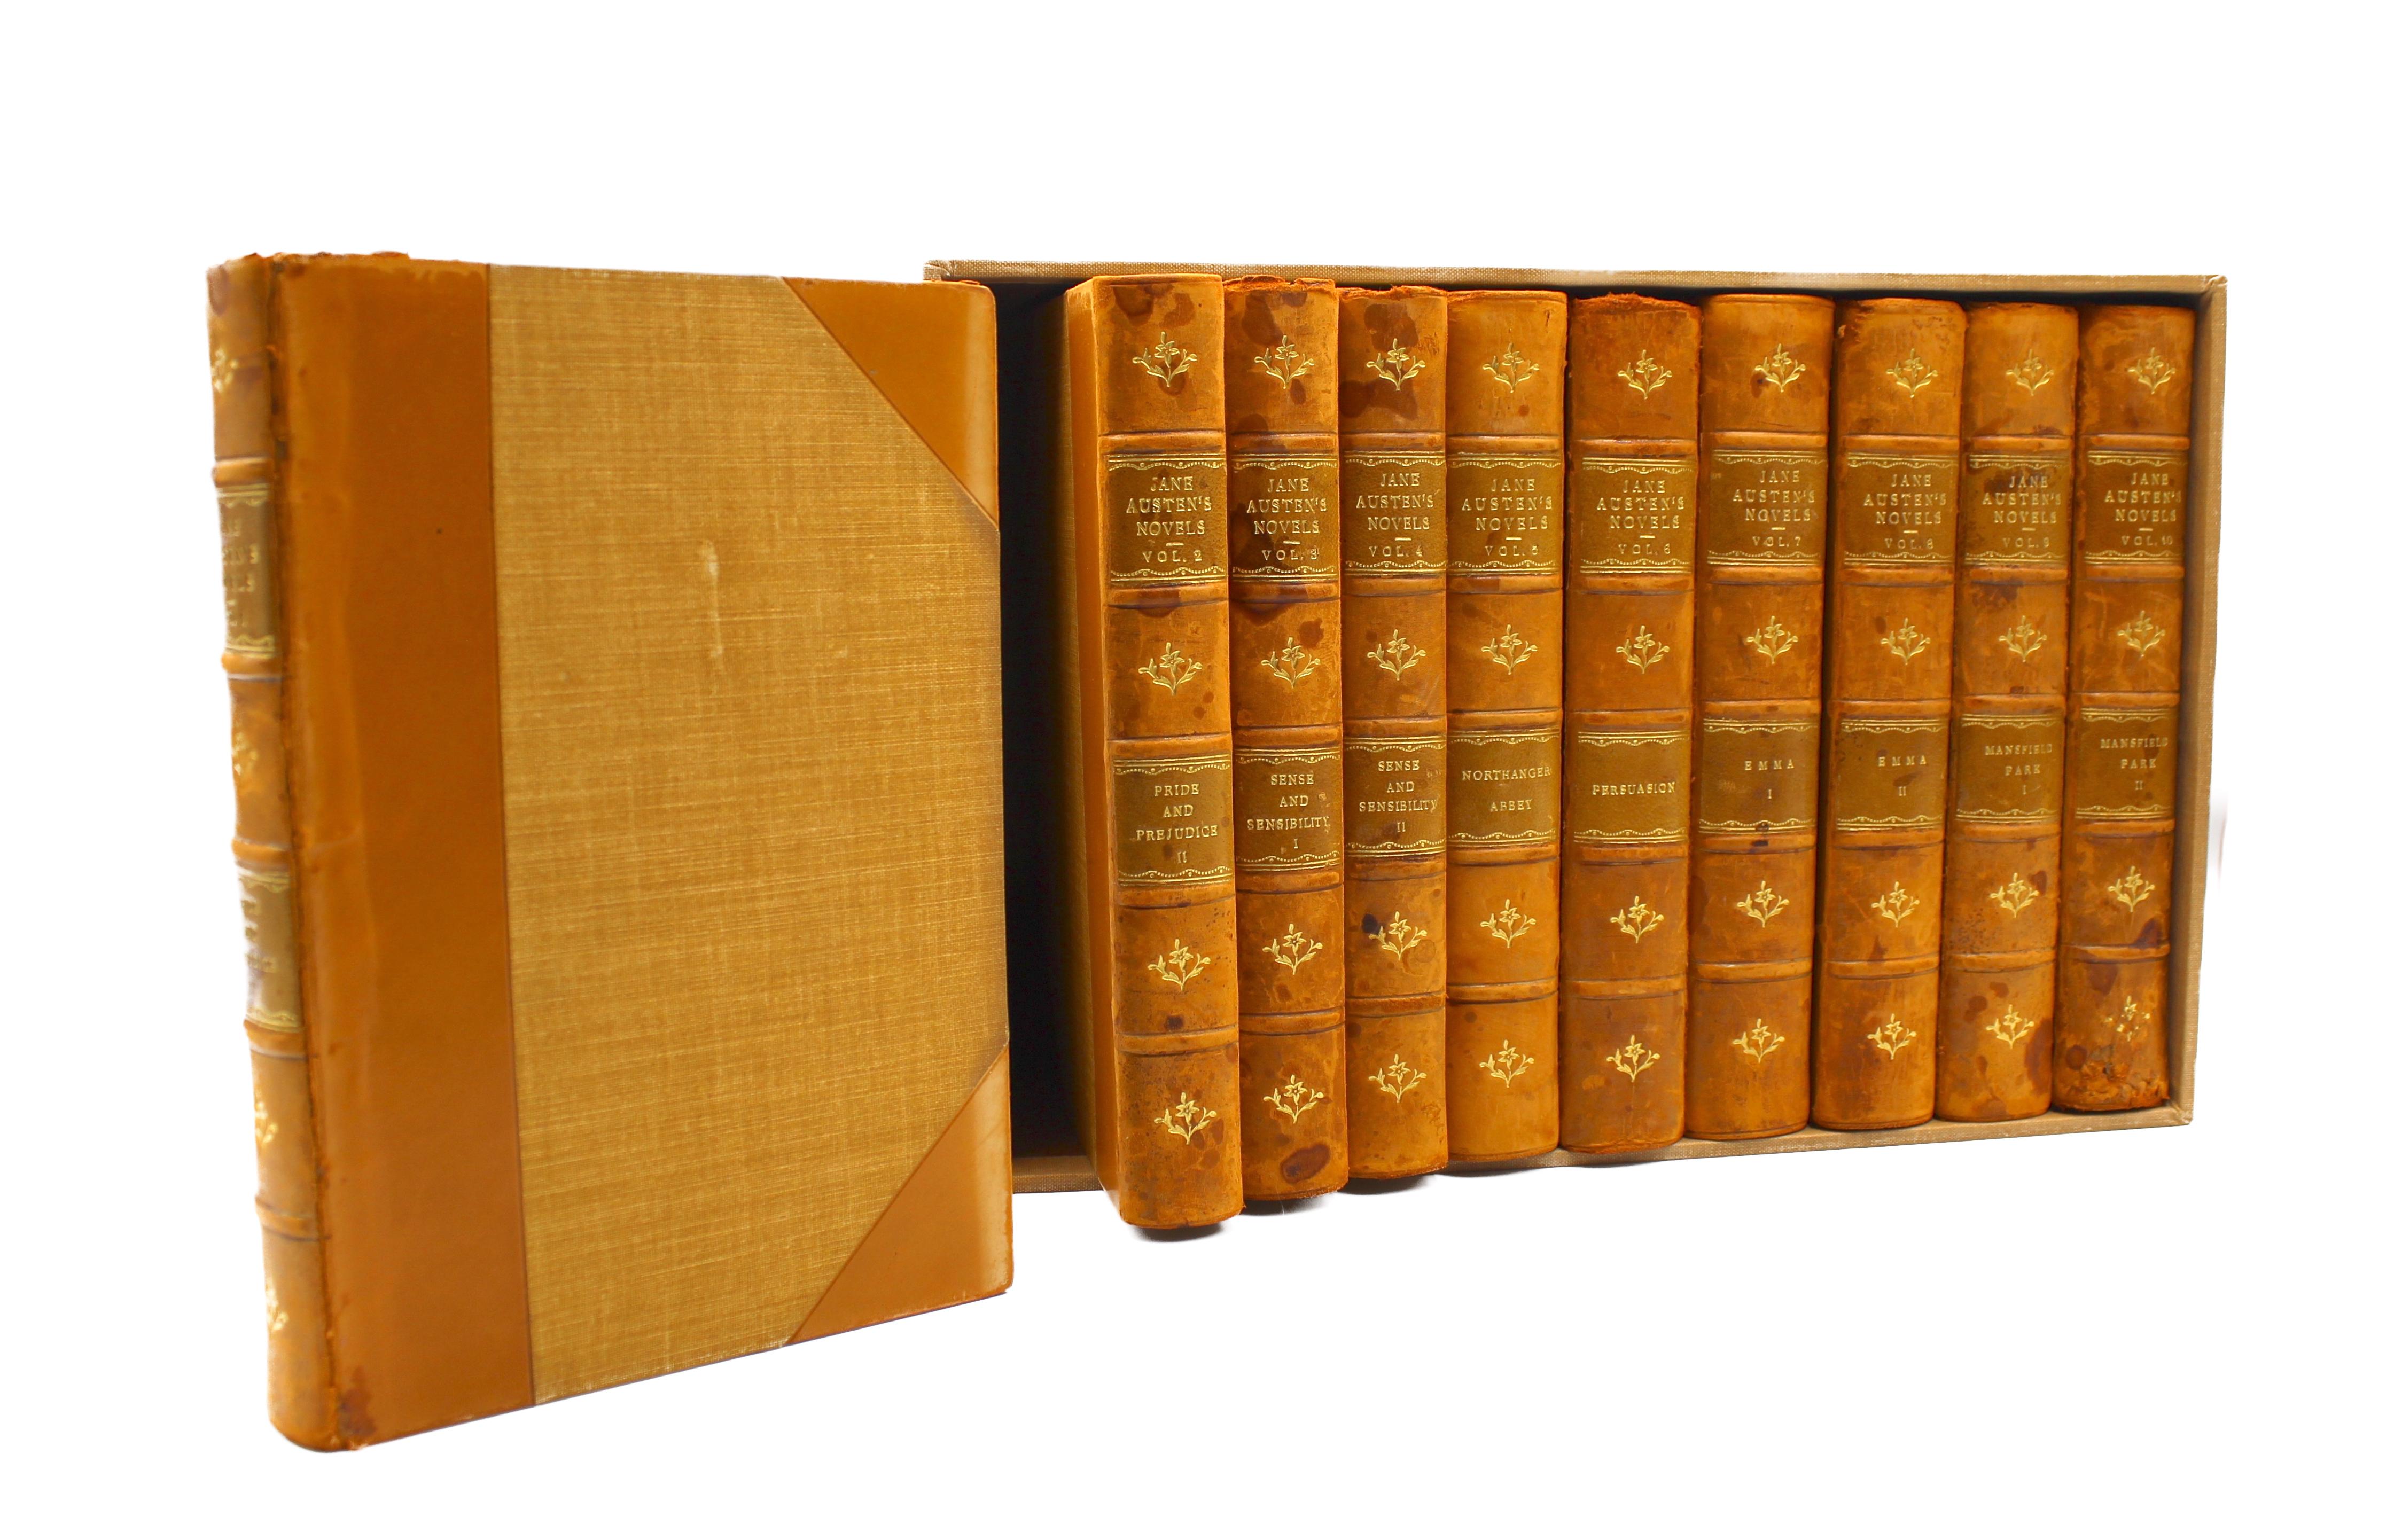 Victorian The Novels of Jane Austen by Jane Austen, 10 Volume Set, 1908-1909